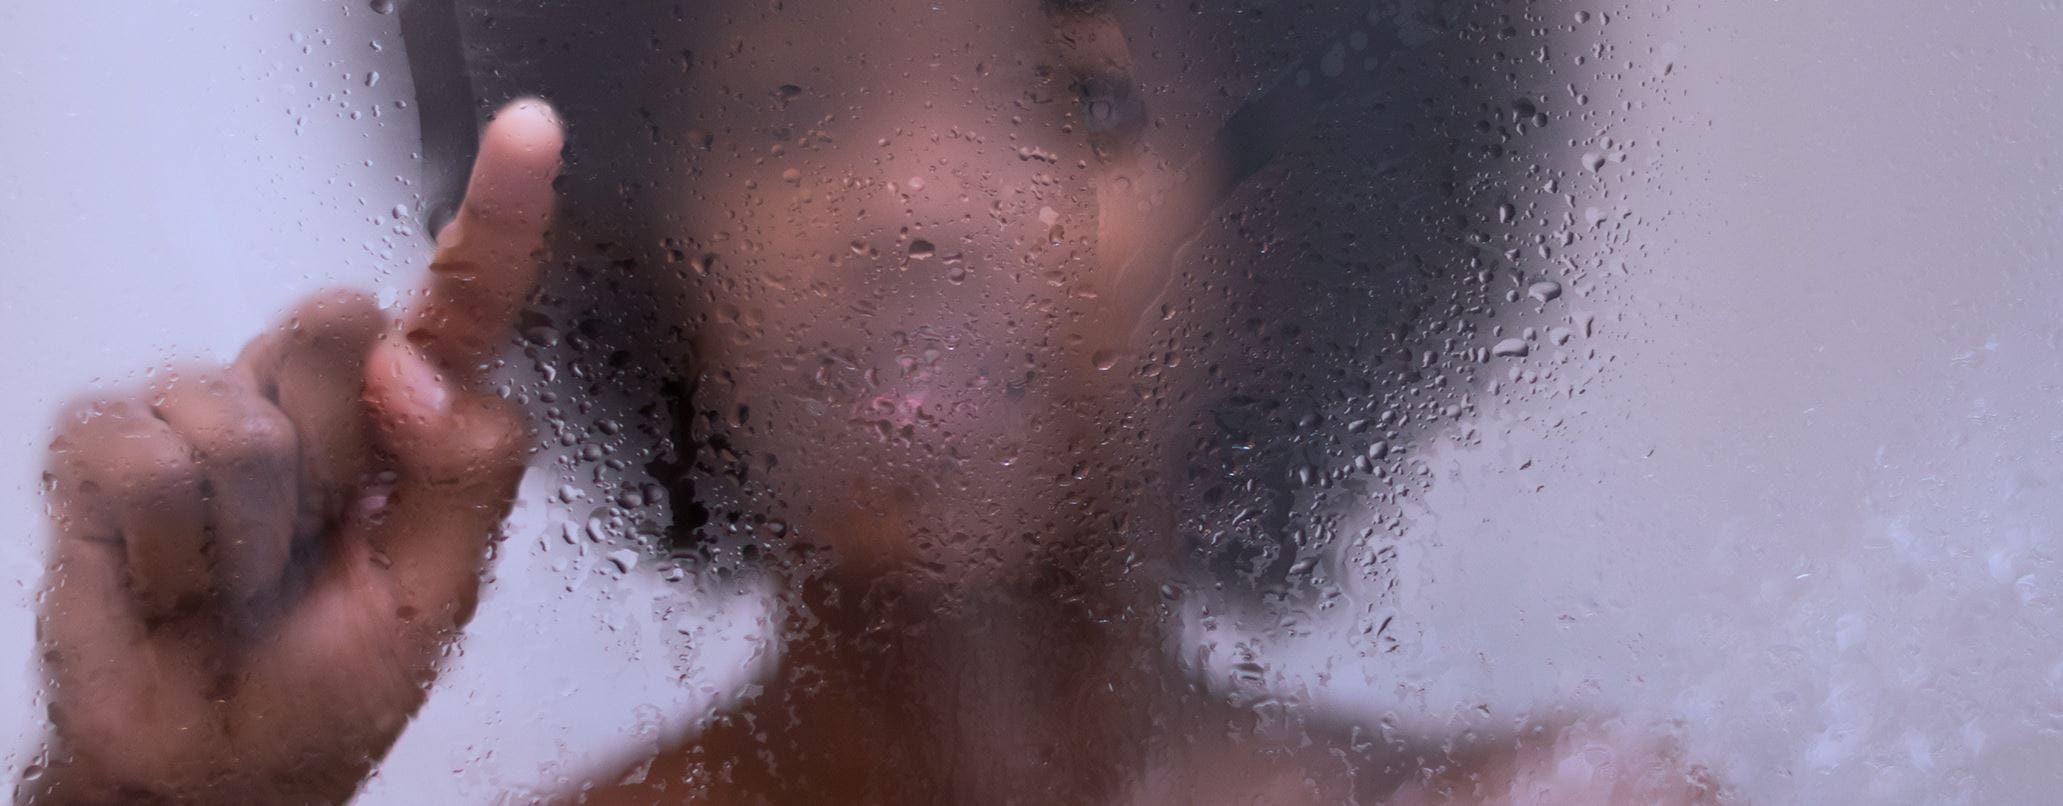 femme-dans-une-douche-vitrée-header